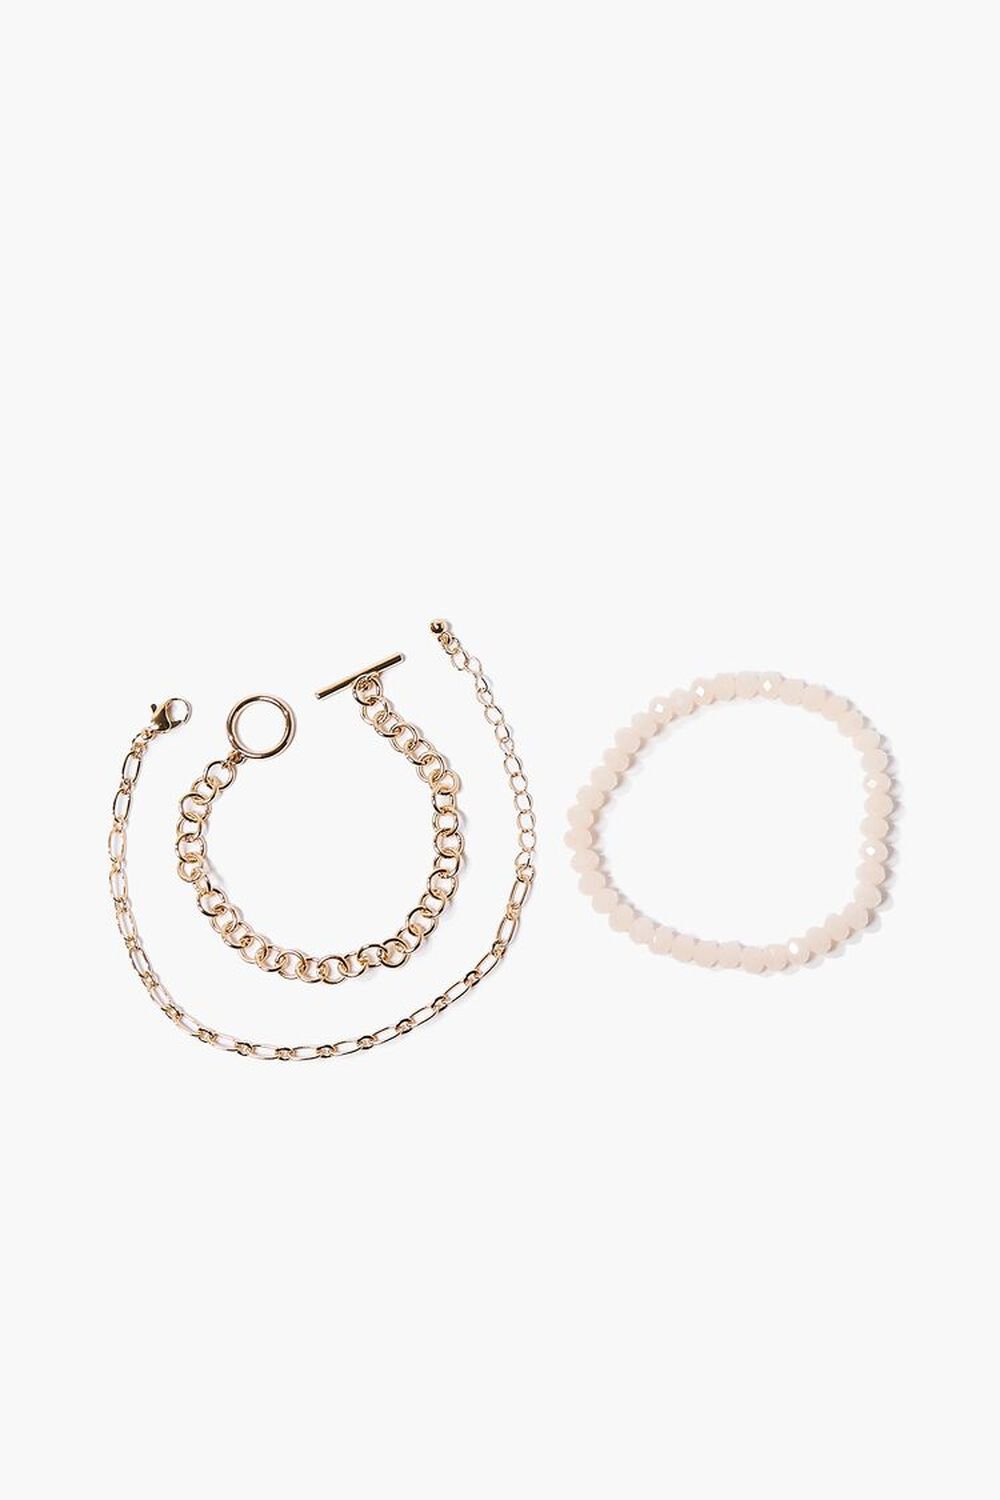 Beaded & Chain Bracelet Set, image 1